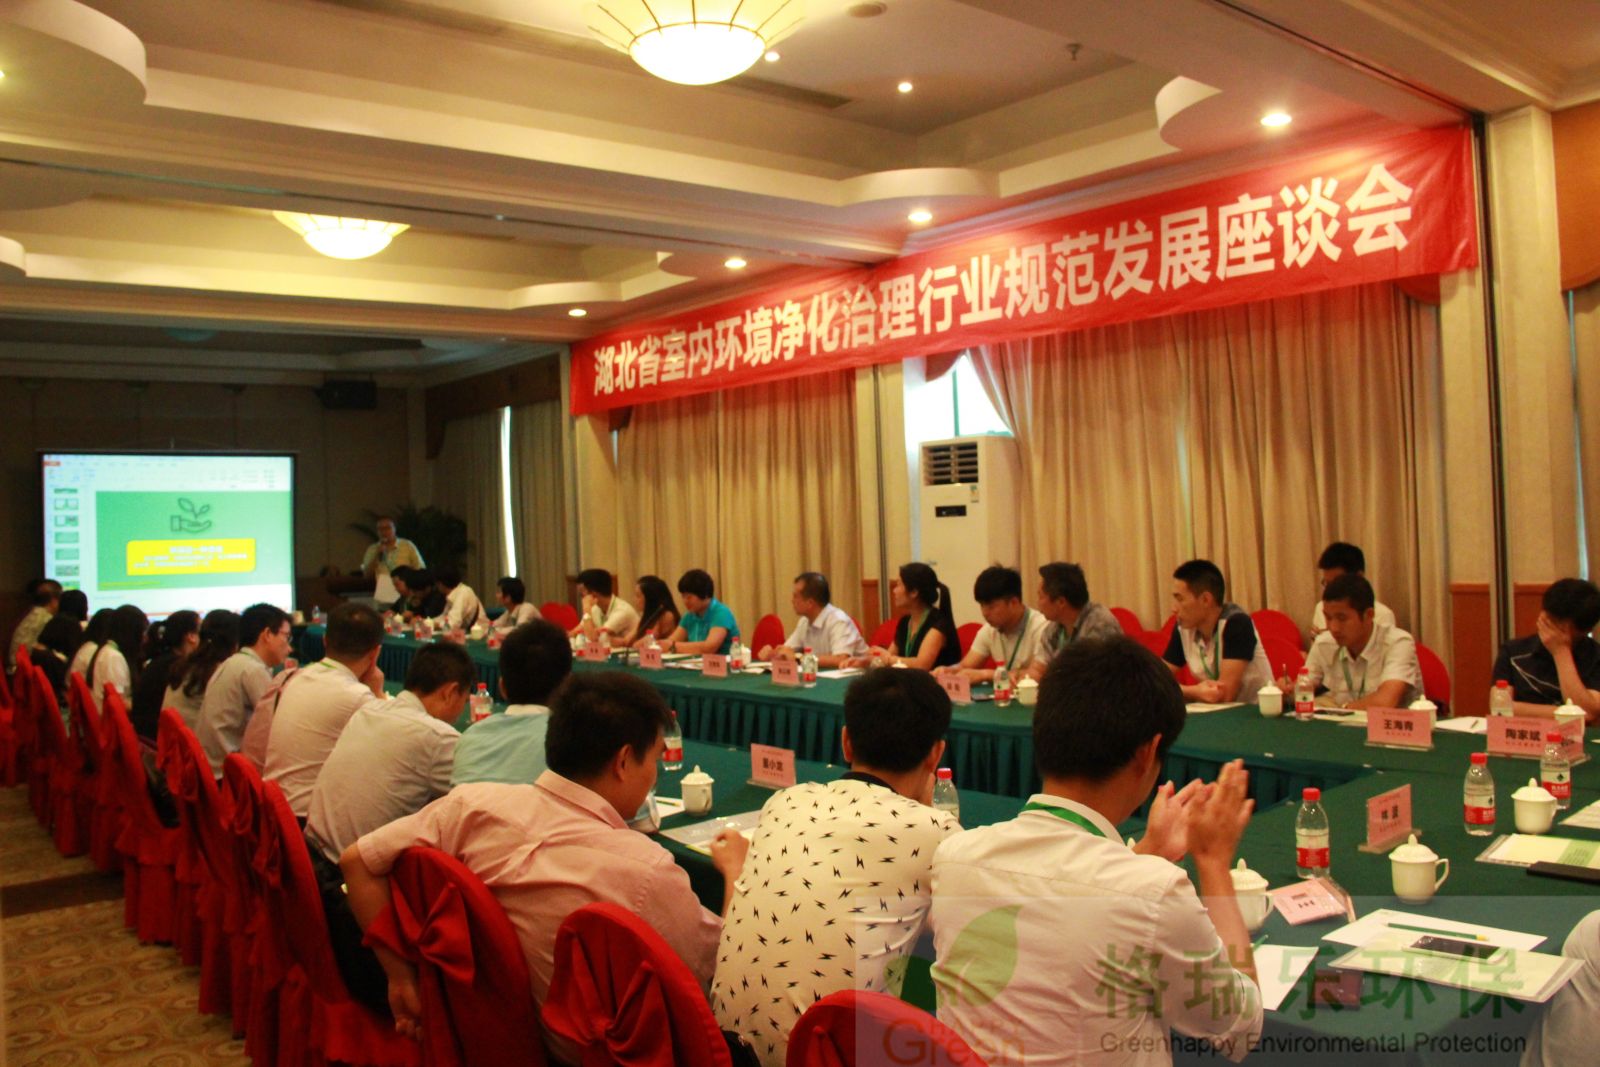 中国净化委员会,室内环境,行业规范